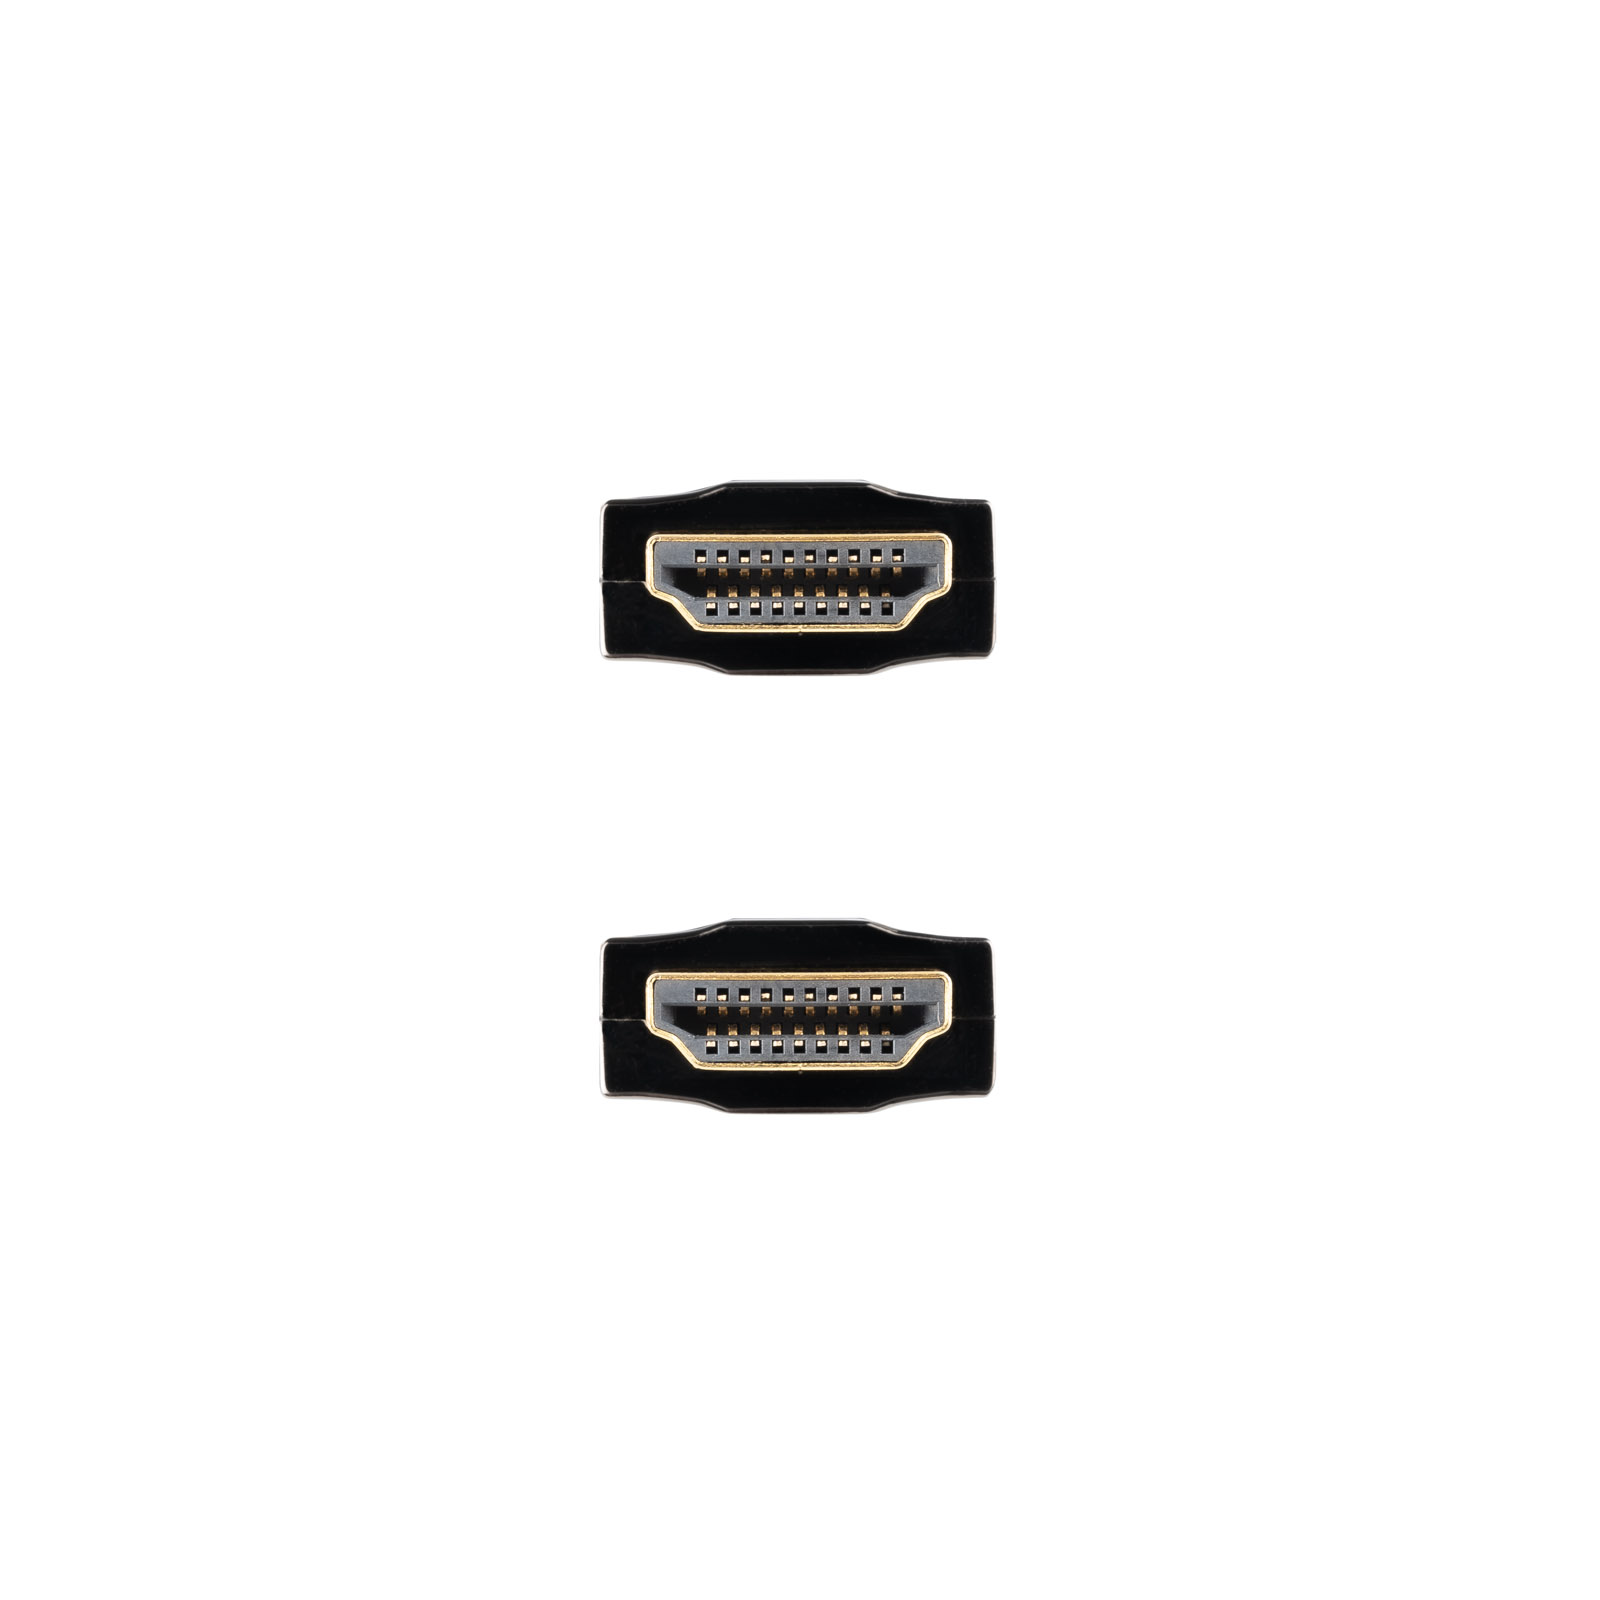 Nanocable Câble HDMI v2.0 Mâle vers HDMI v2.0 Mâle 10m - 4K@60Hz 18Gbps - Couleur Noir